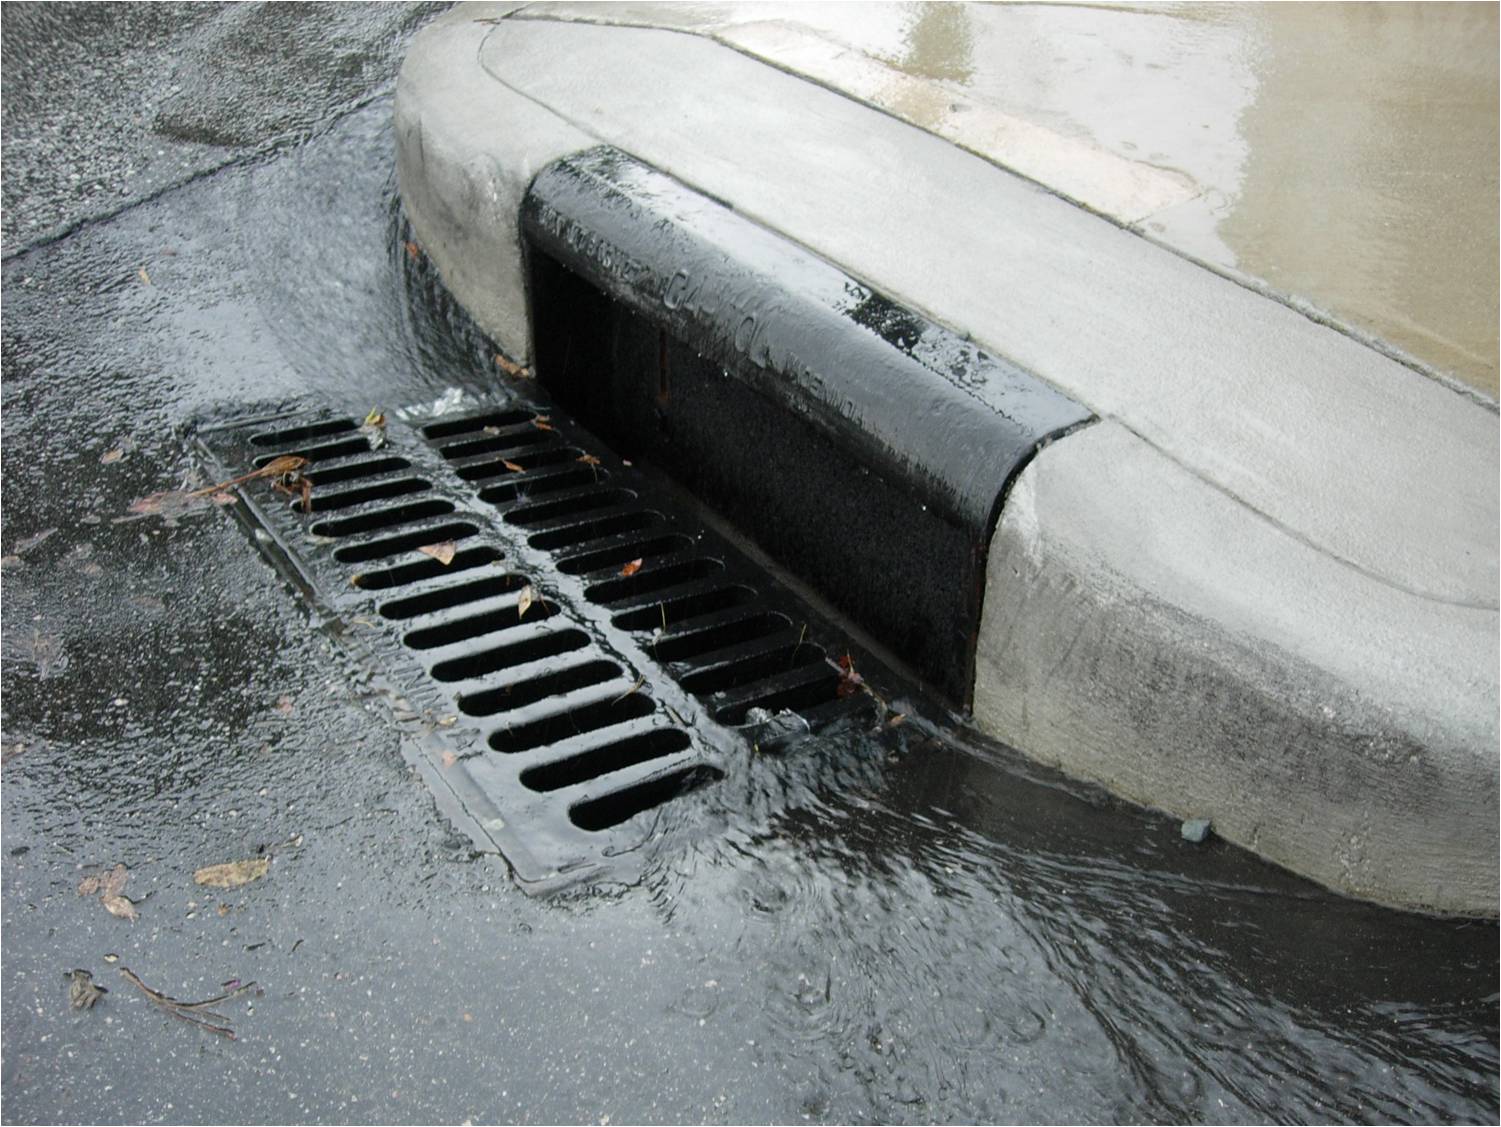 Storm drain along a curb.